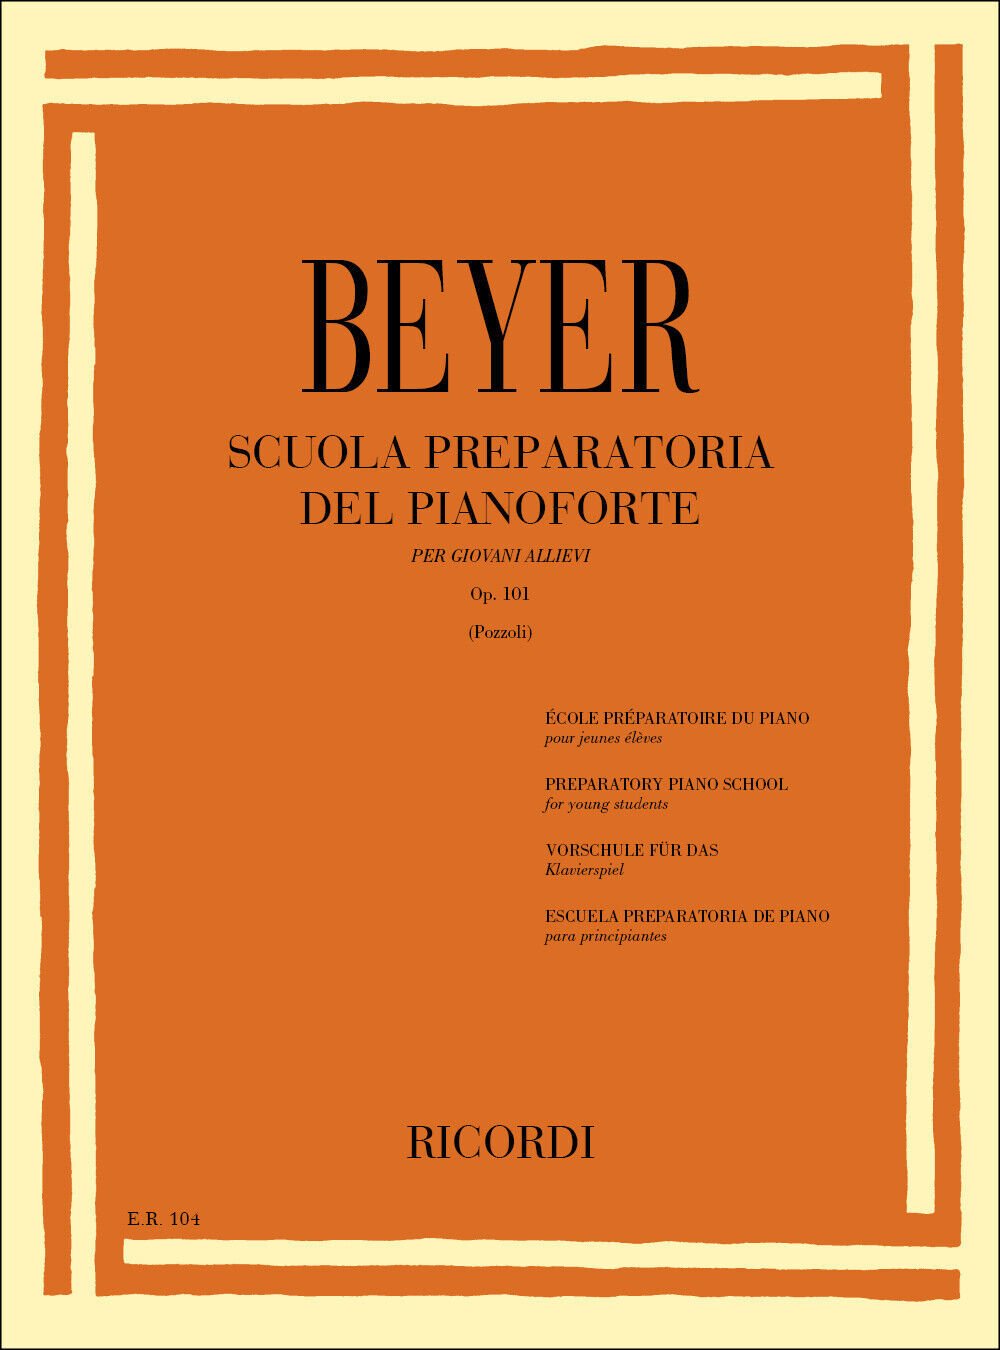 Beyer Piyano Kitabı, Ricordi Edition